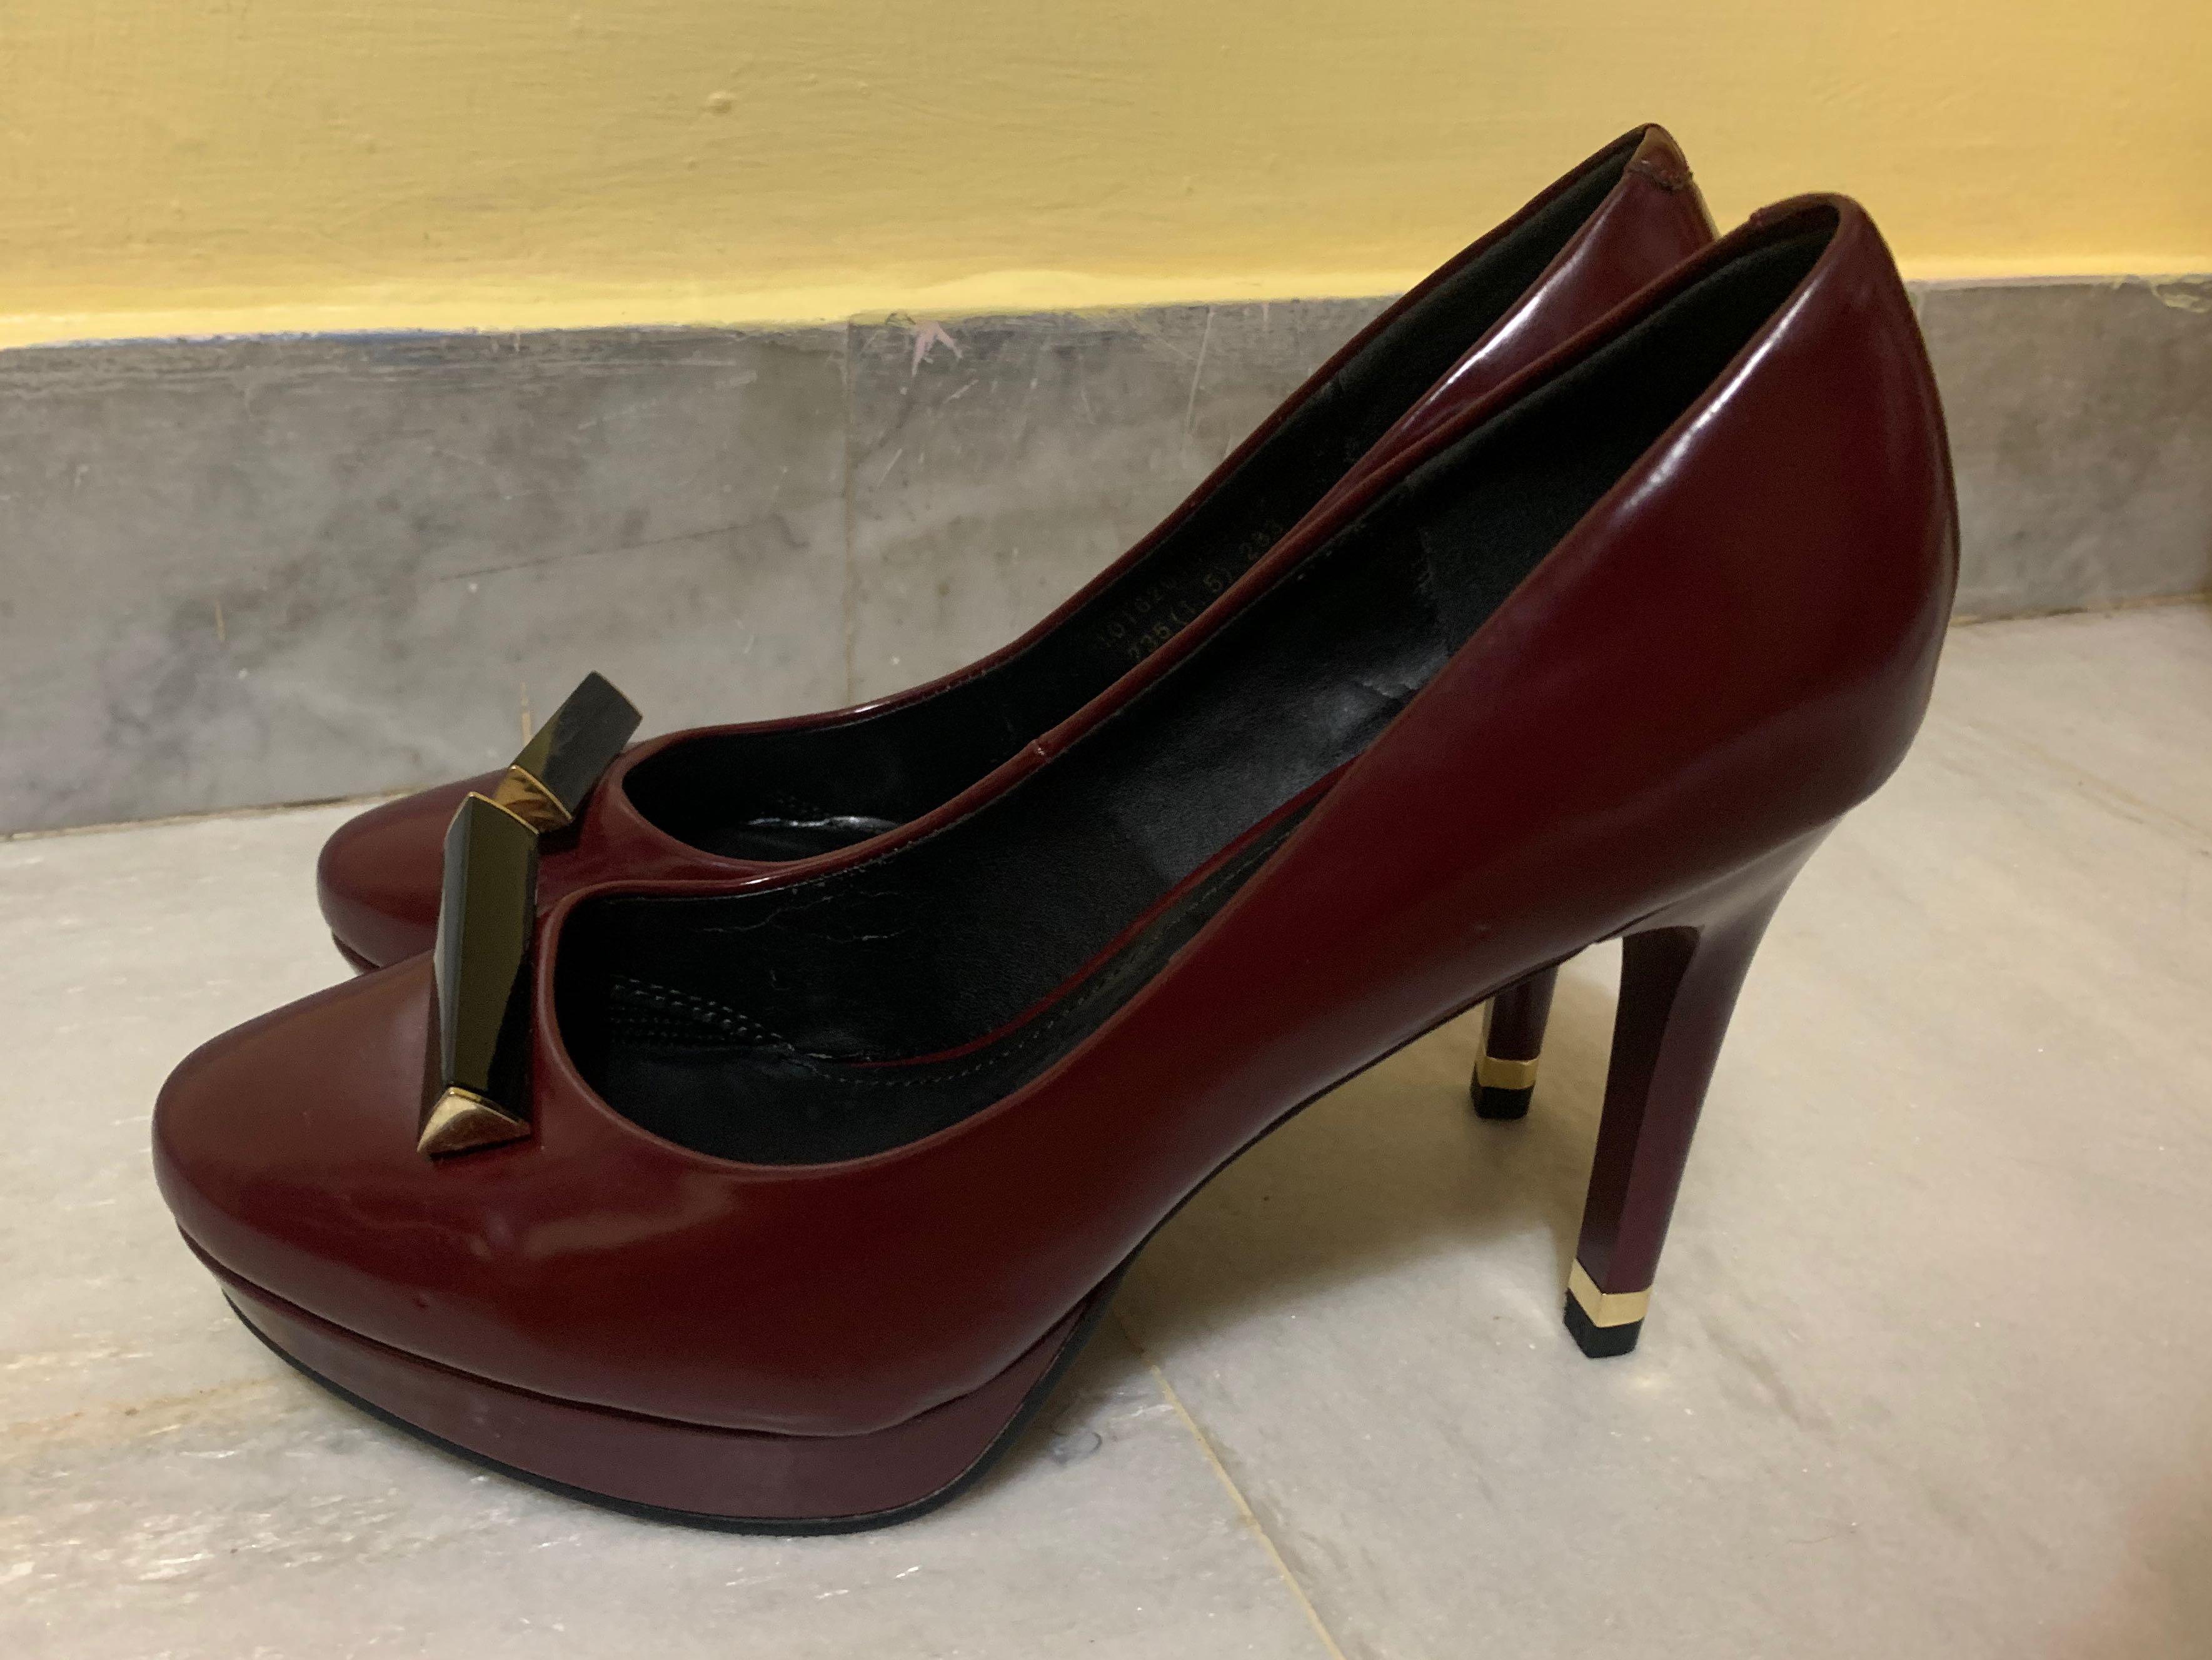 maroon high heels